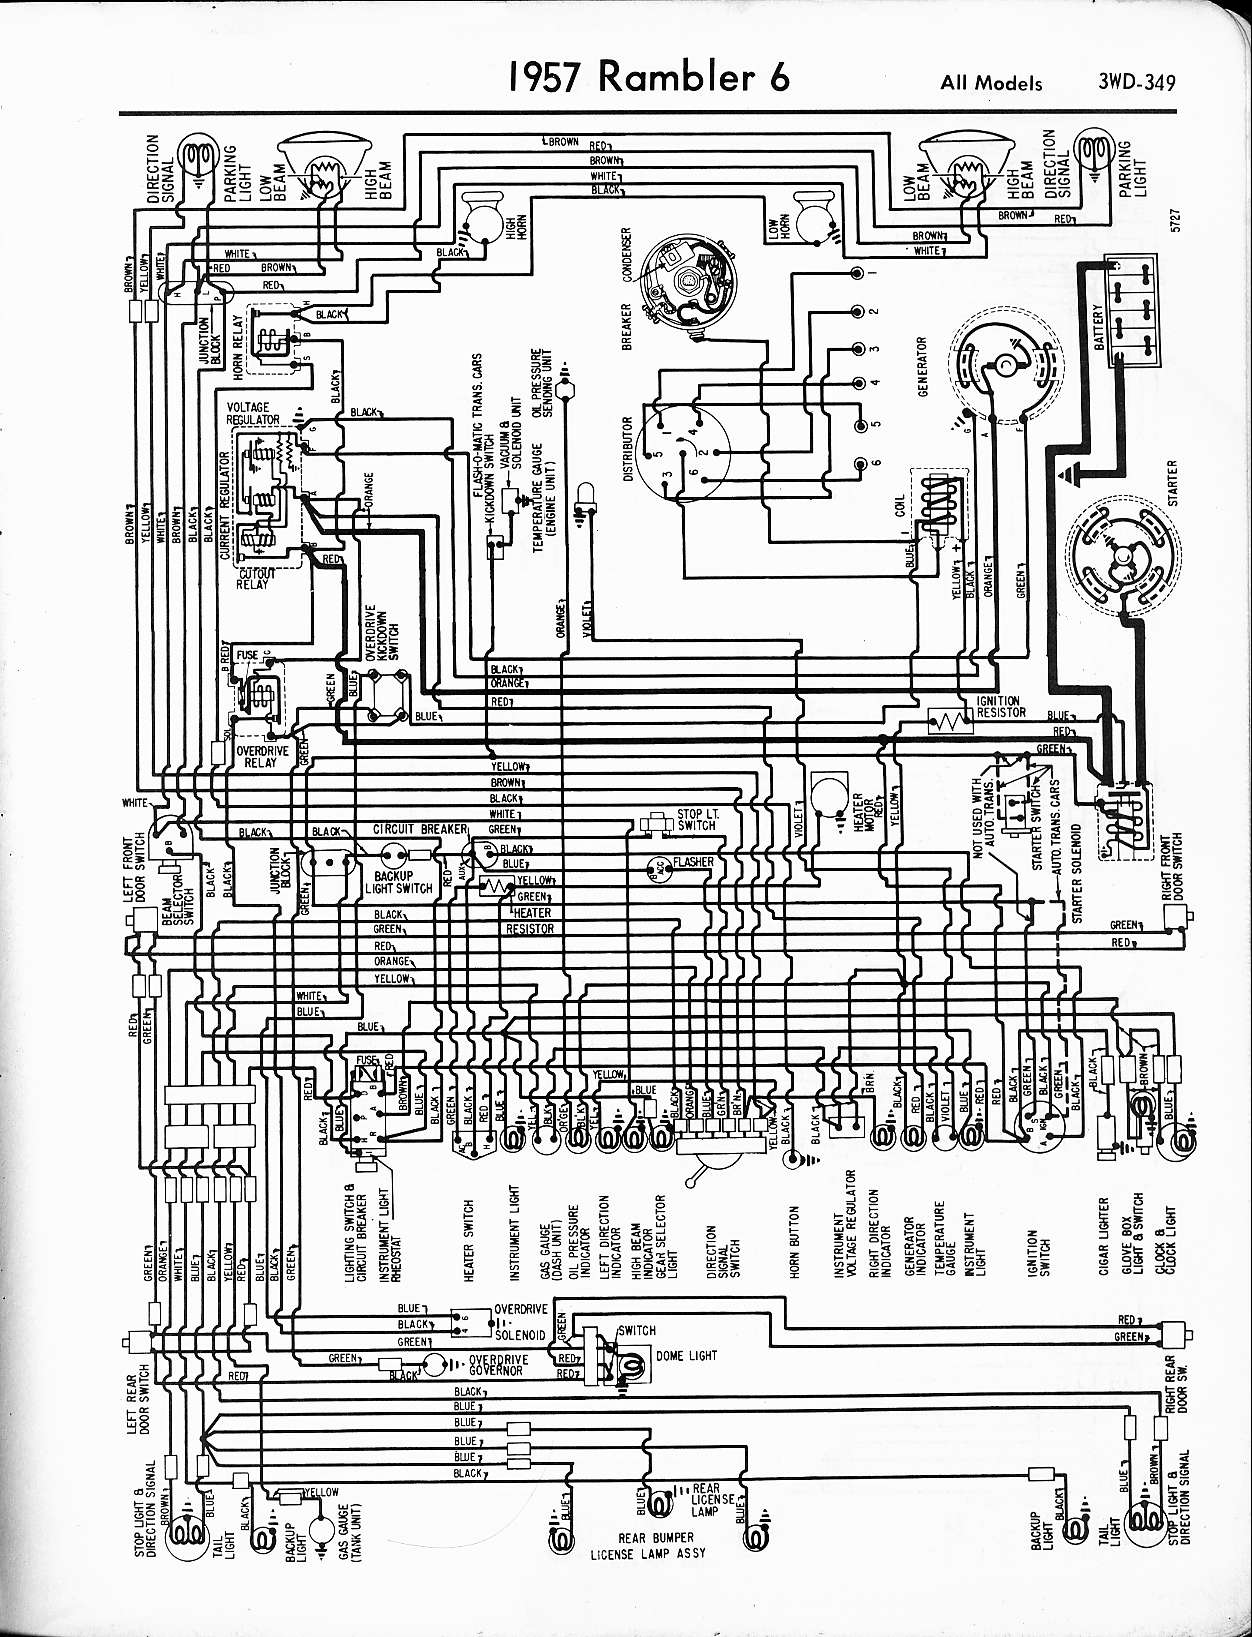 holiday rambler wiring diagram - Wiring Diagram